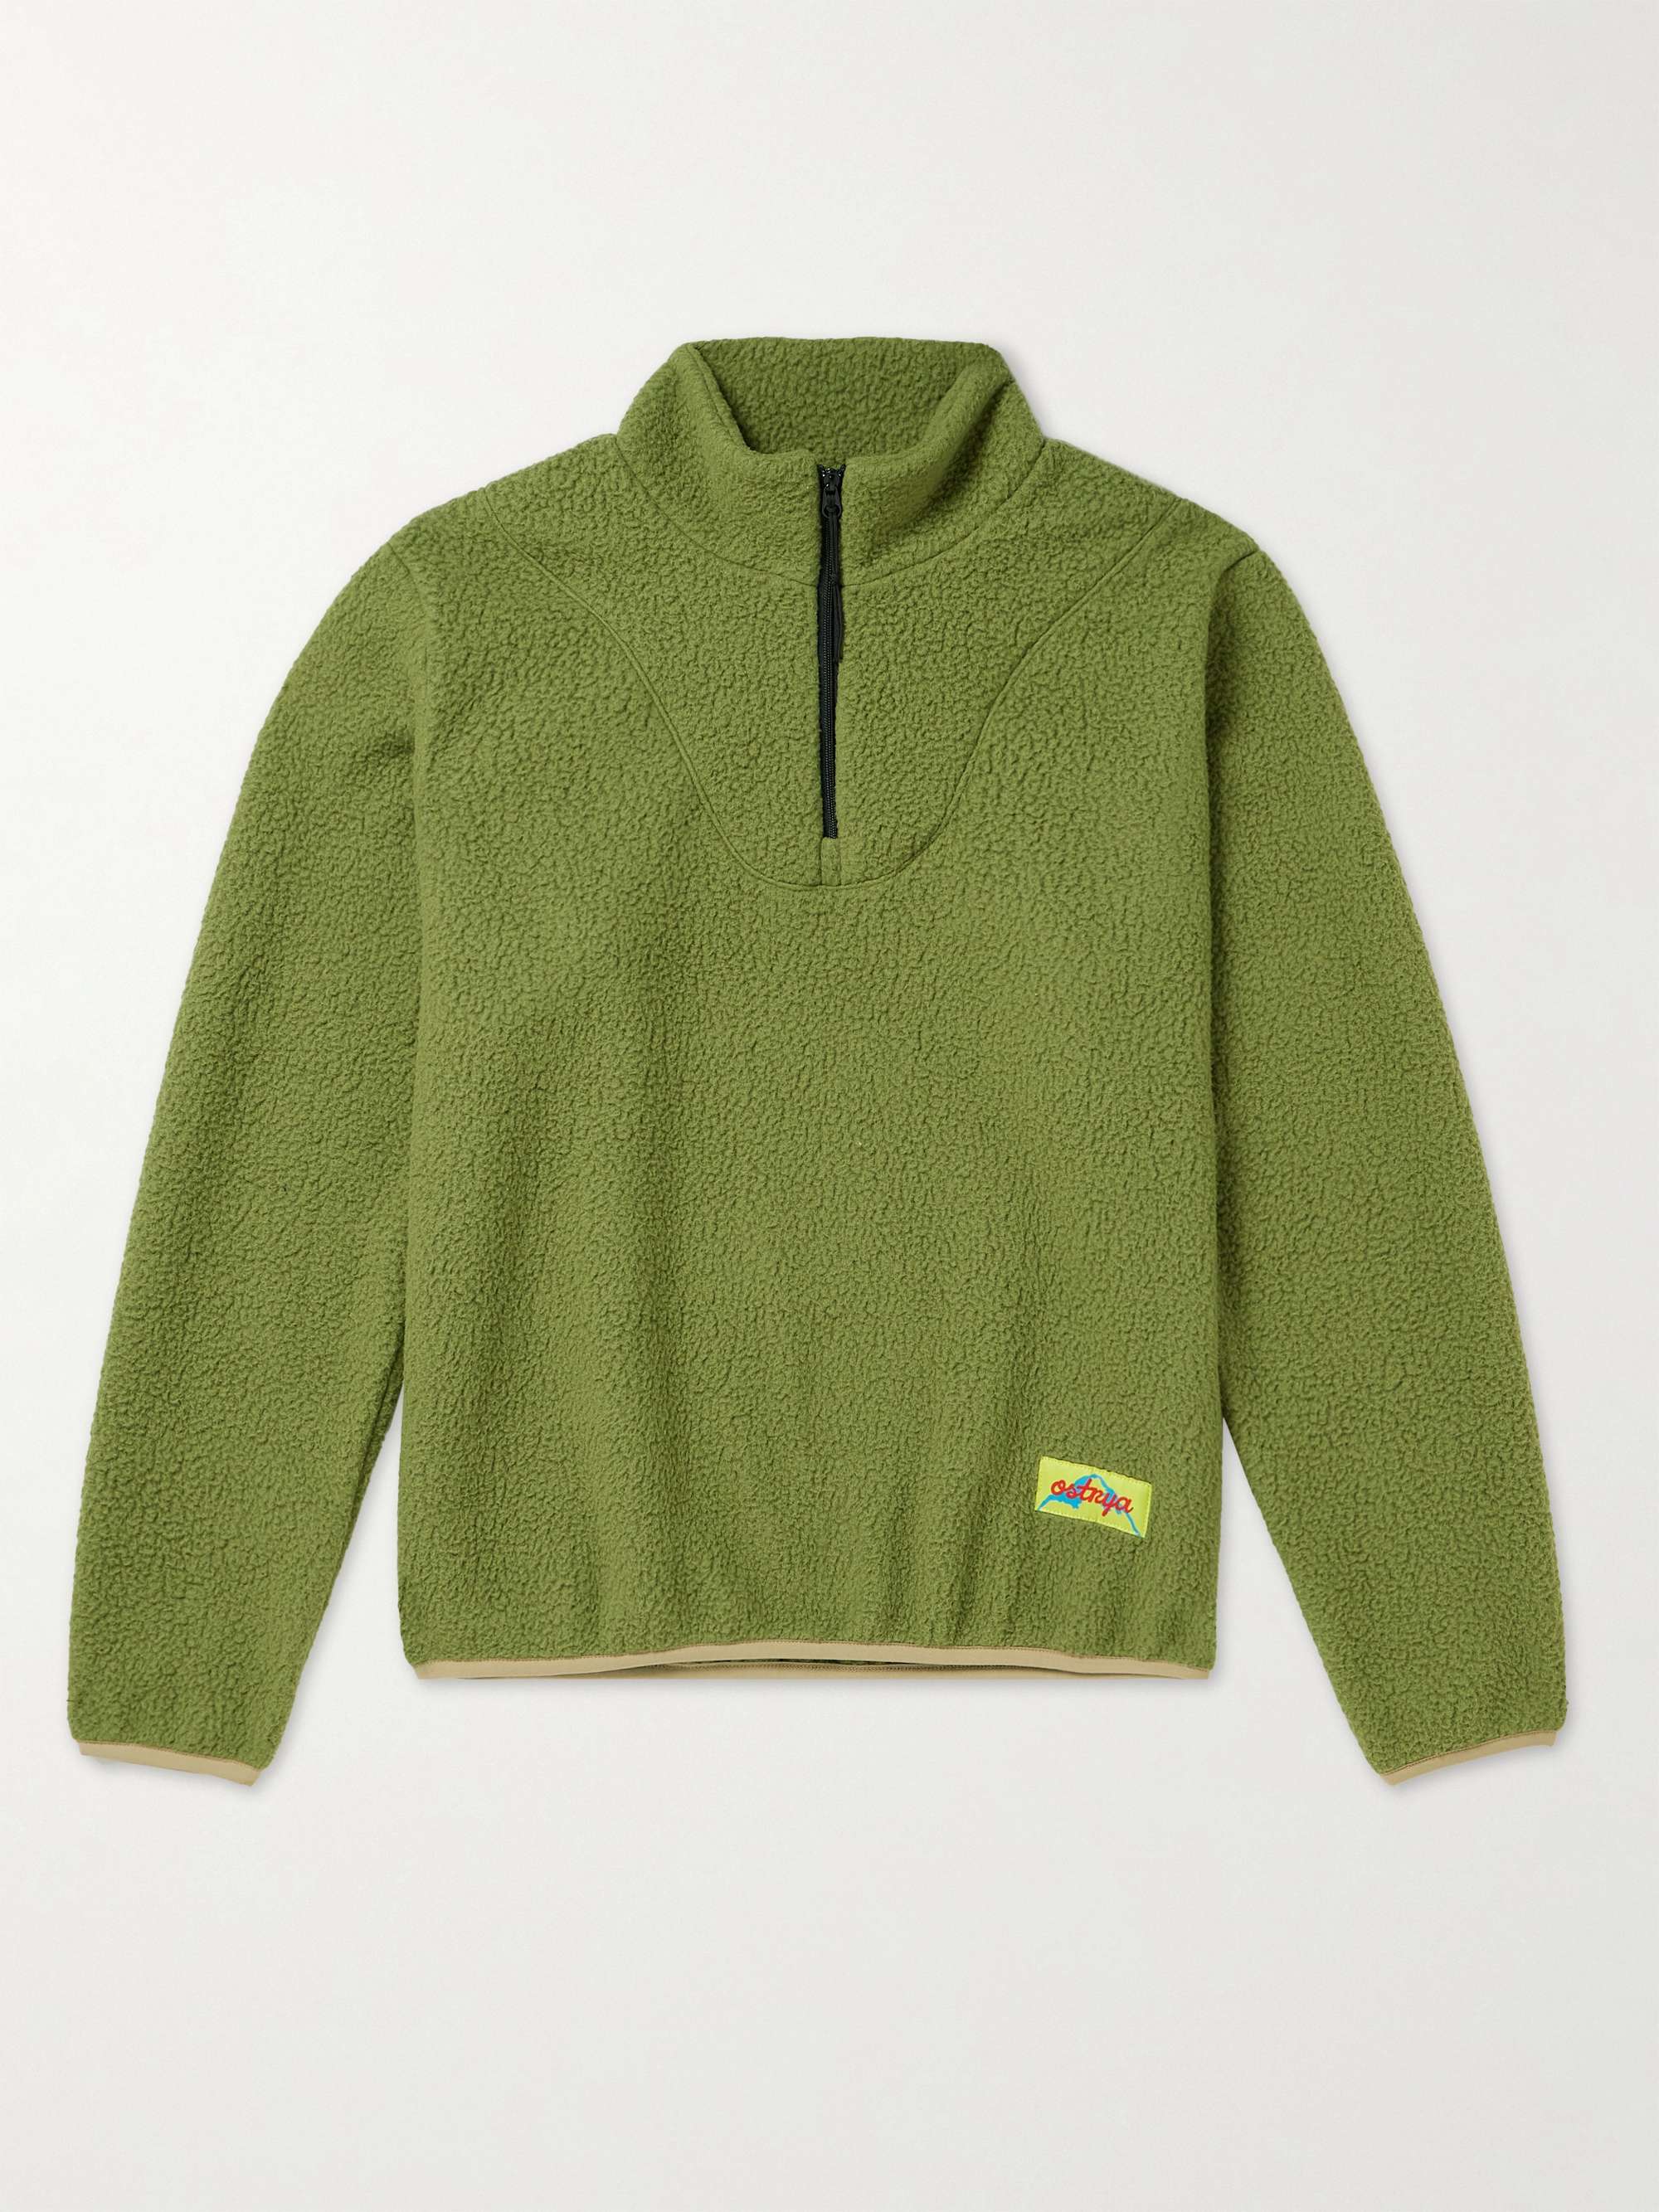 Vintage ATG Fleece Winter Quarter Zip Sweatshirt / Made in Canada